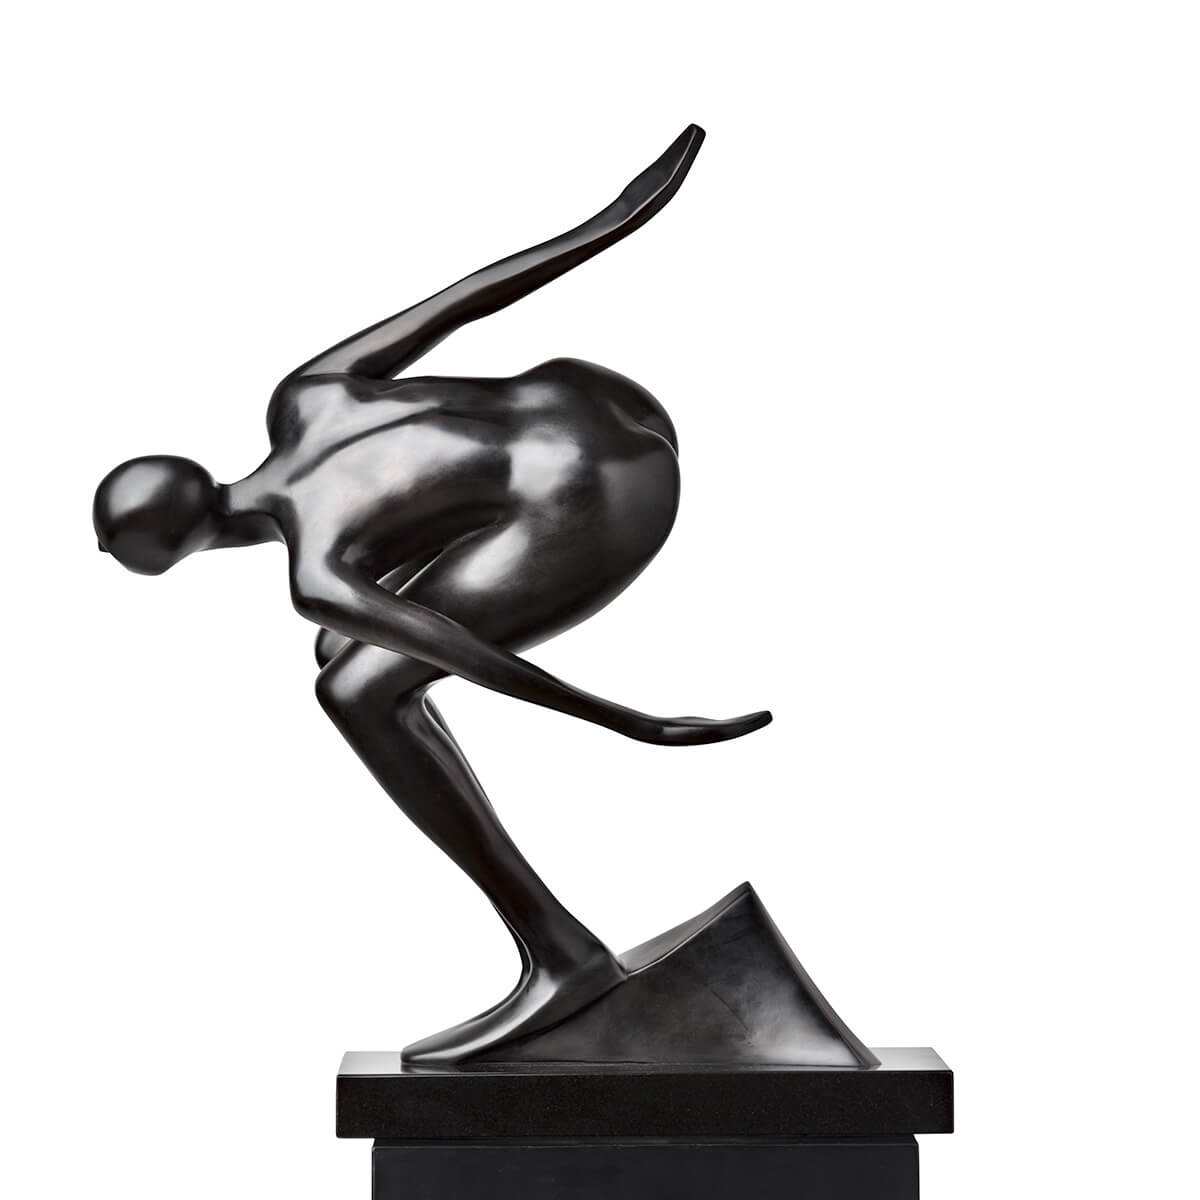 Robert-Helle-Sculpture-Gallery-Flow-1-1200x1200